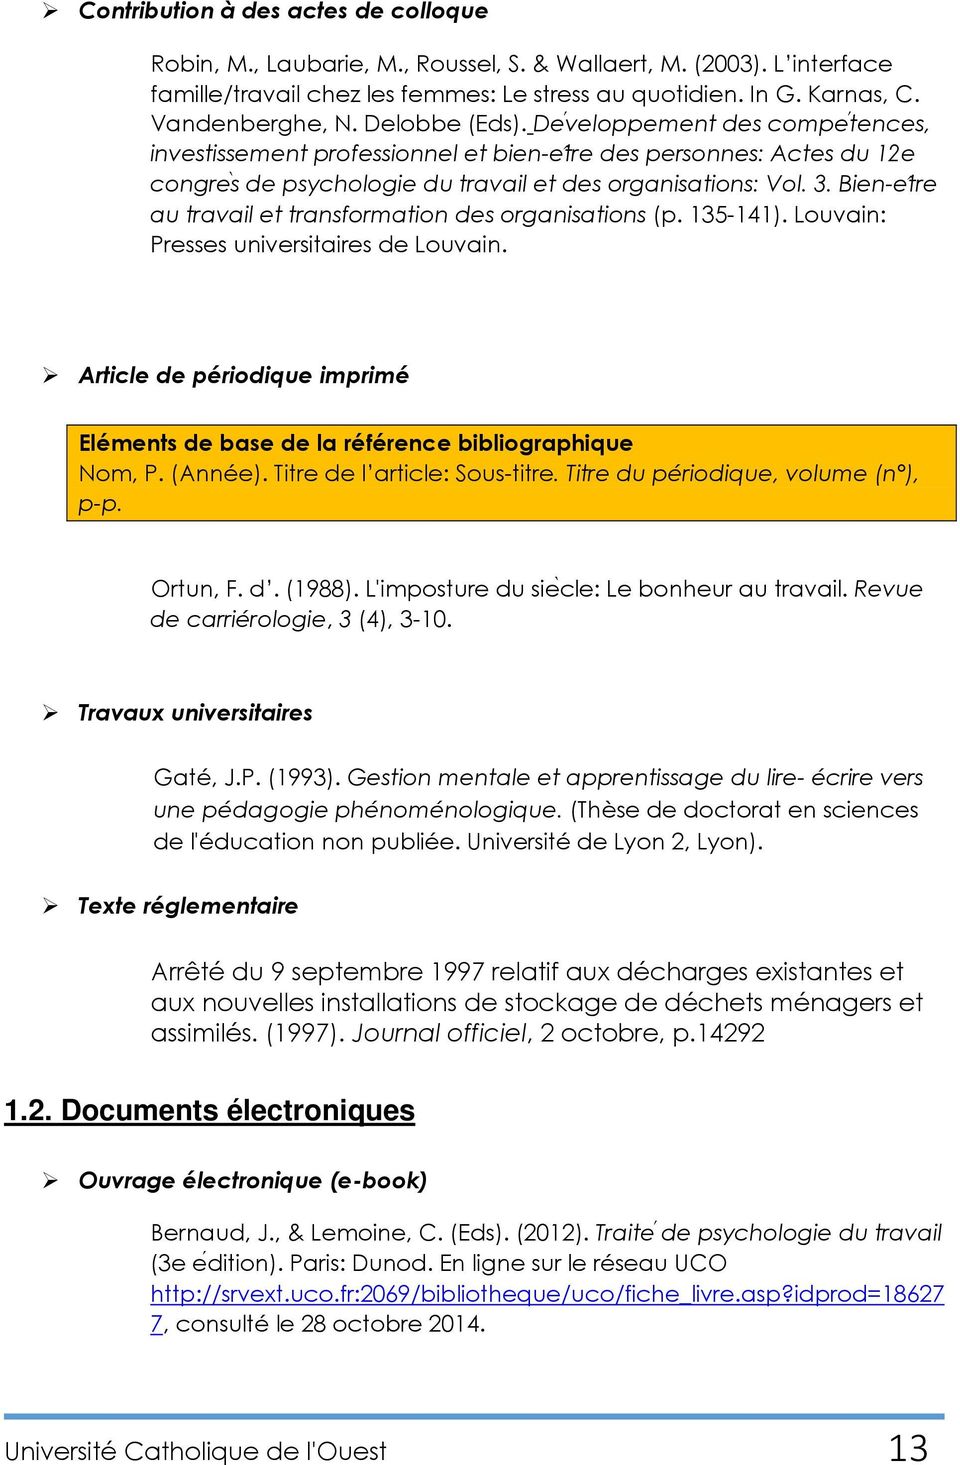 Bien-e tre au travail et transformation des organisations (p. 135-141). Louvain: Presses universitaires de Louvain.